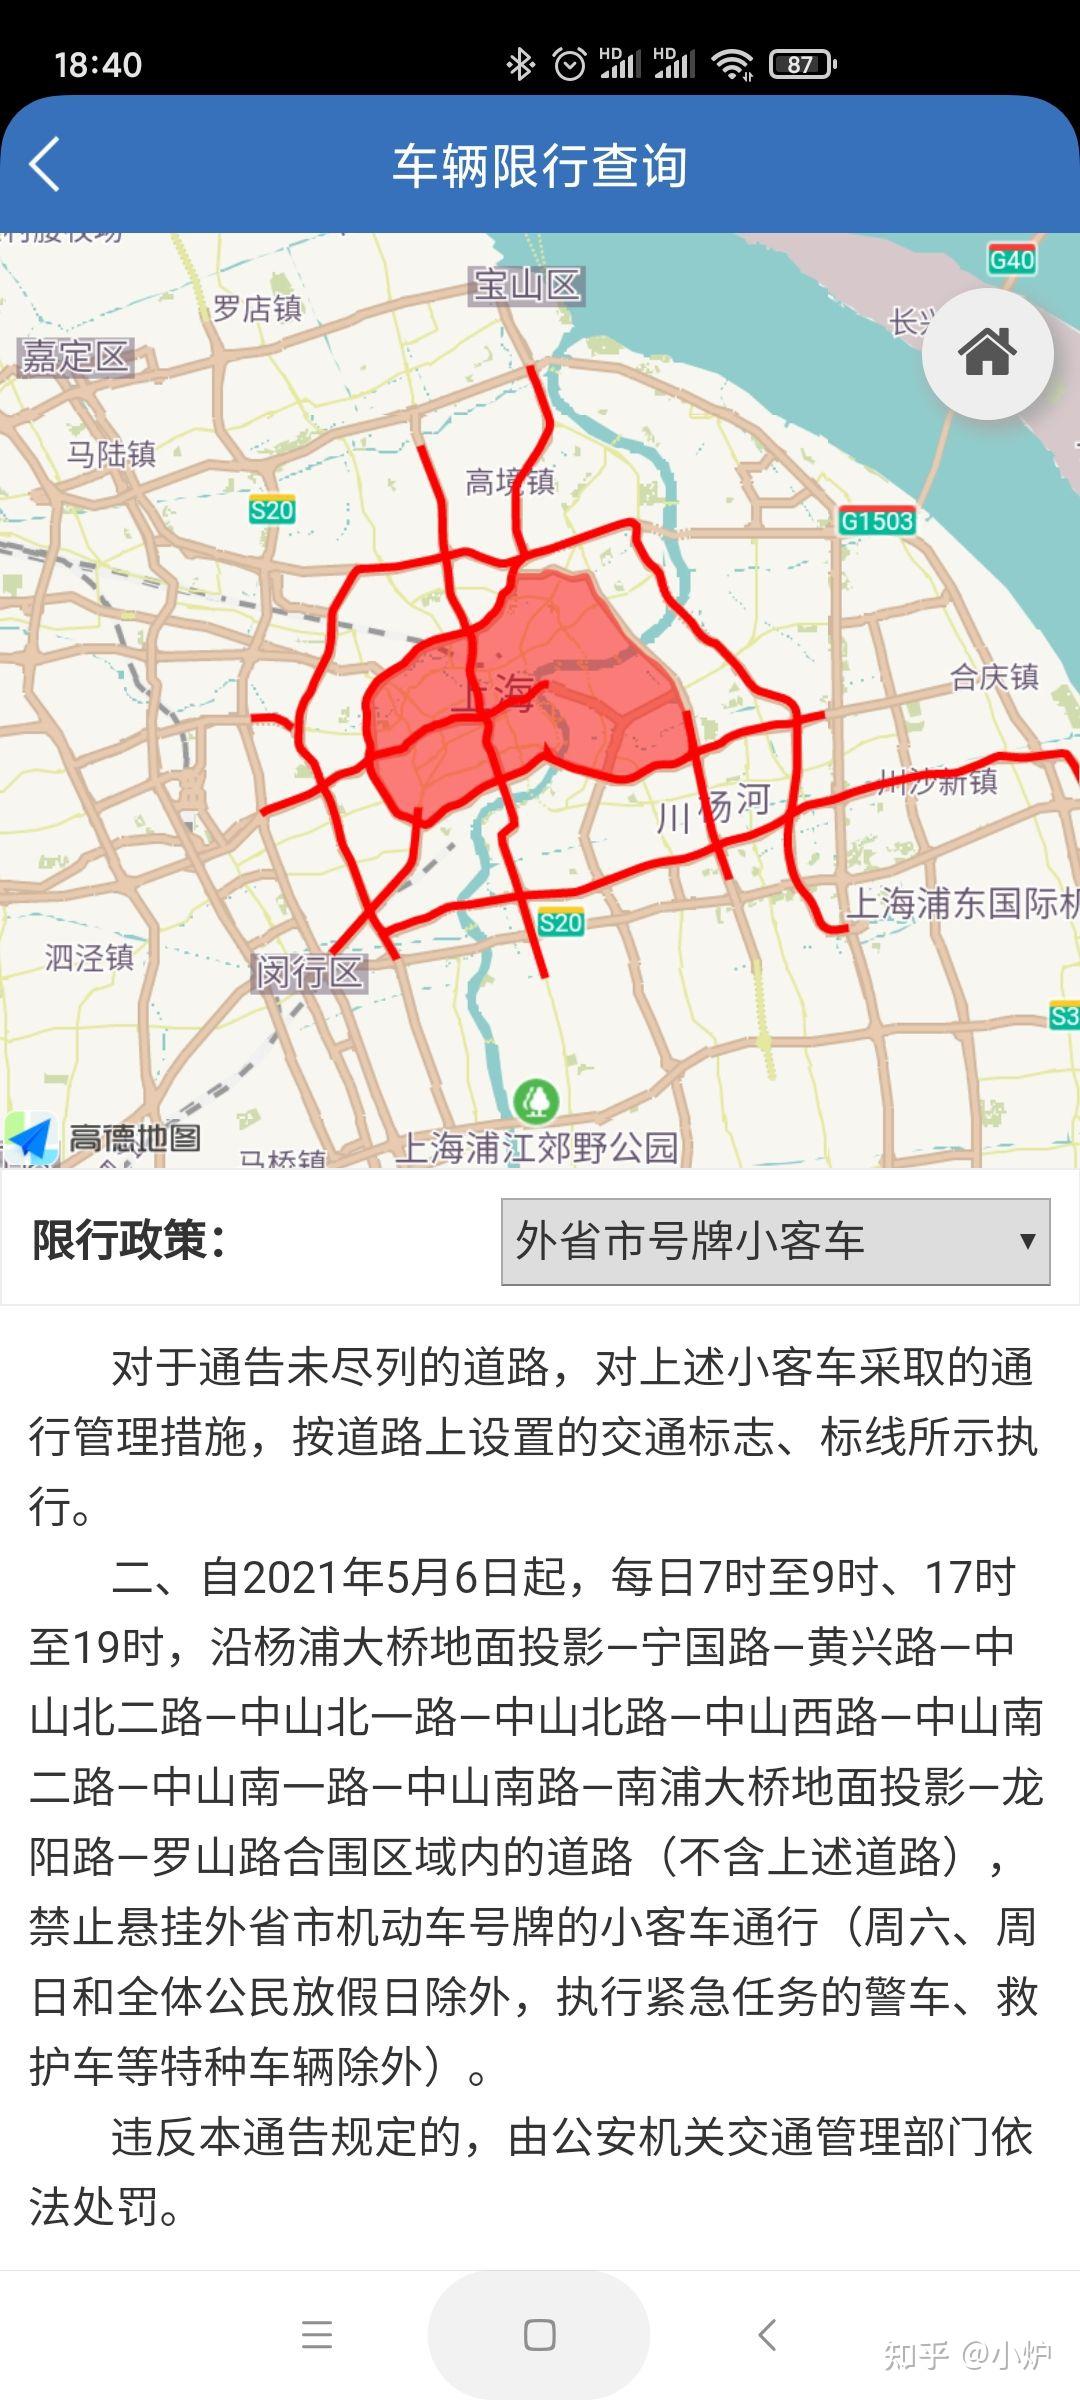 上海外牌内环限行区域内一条道路都不能走吗